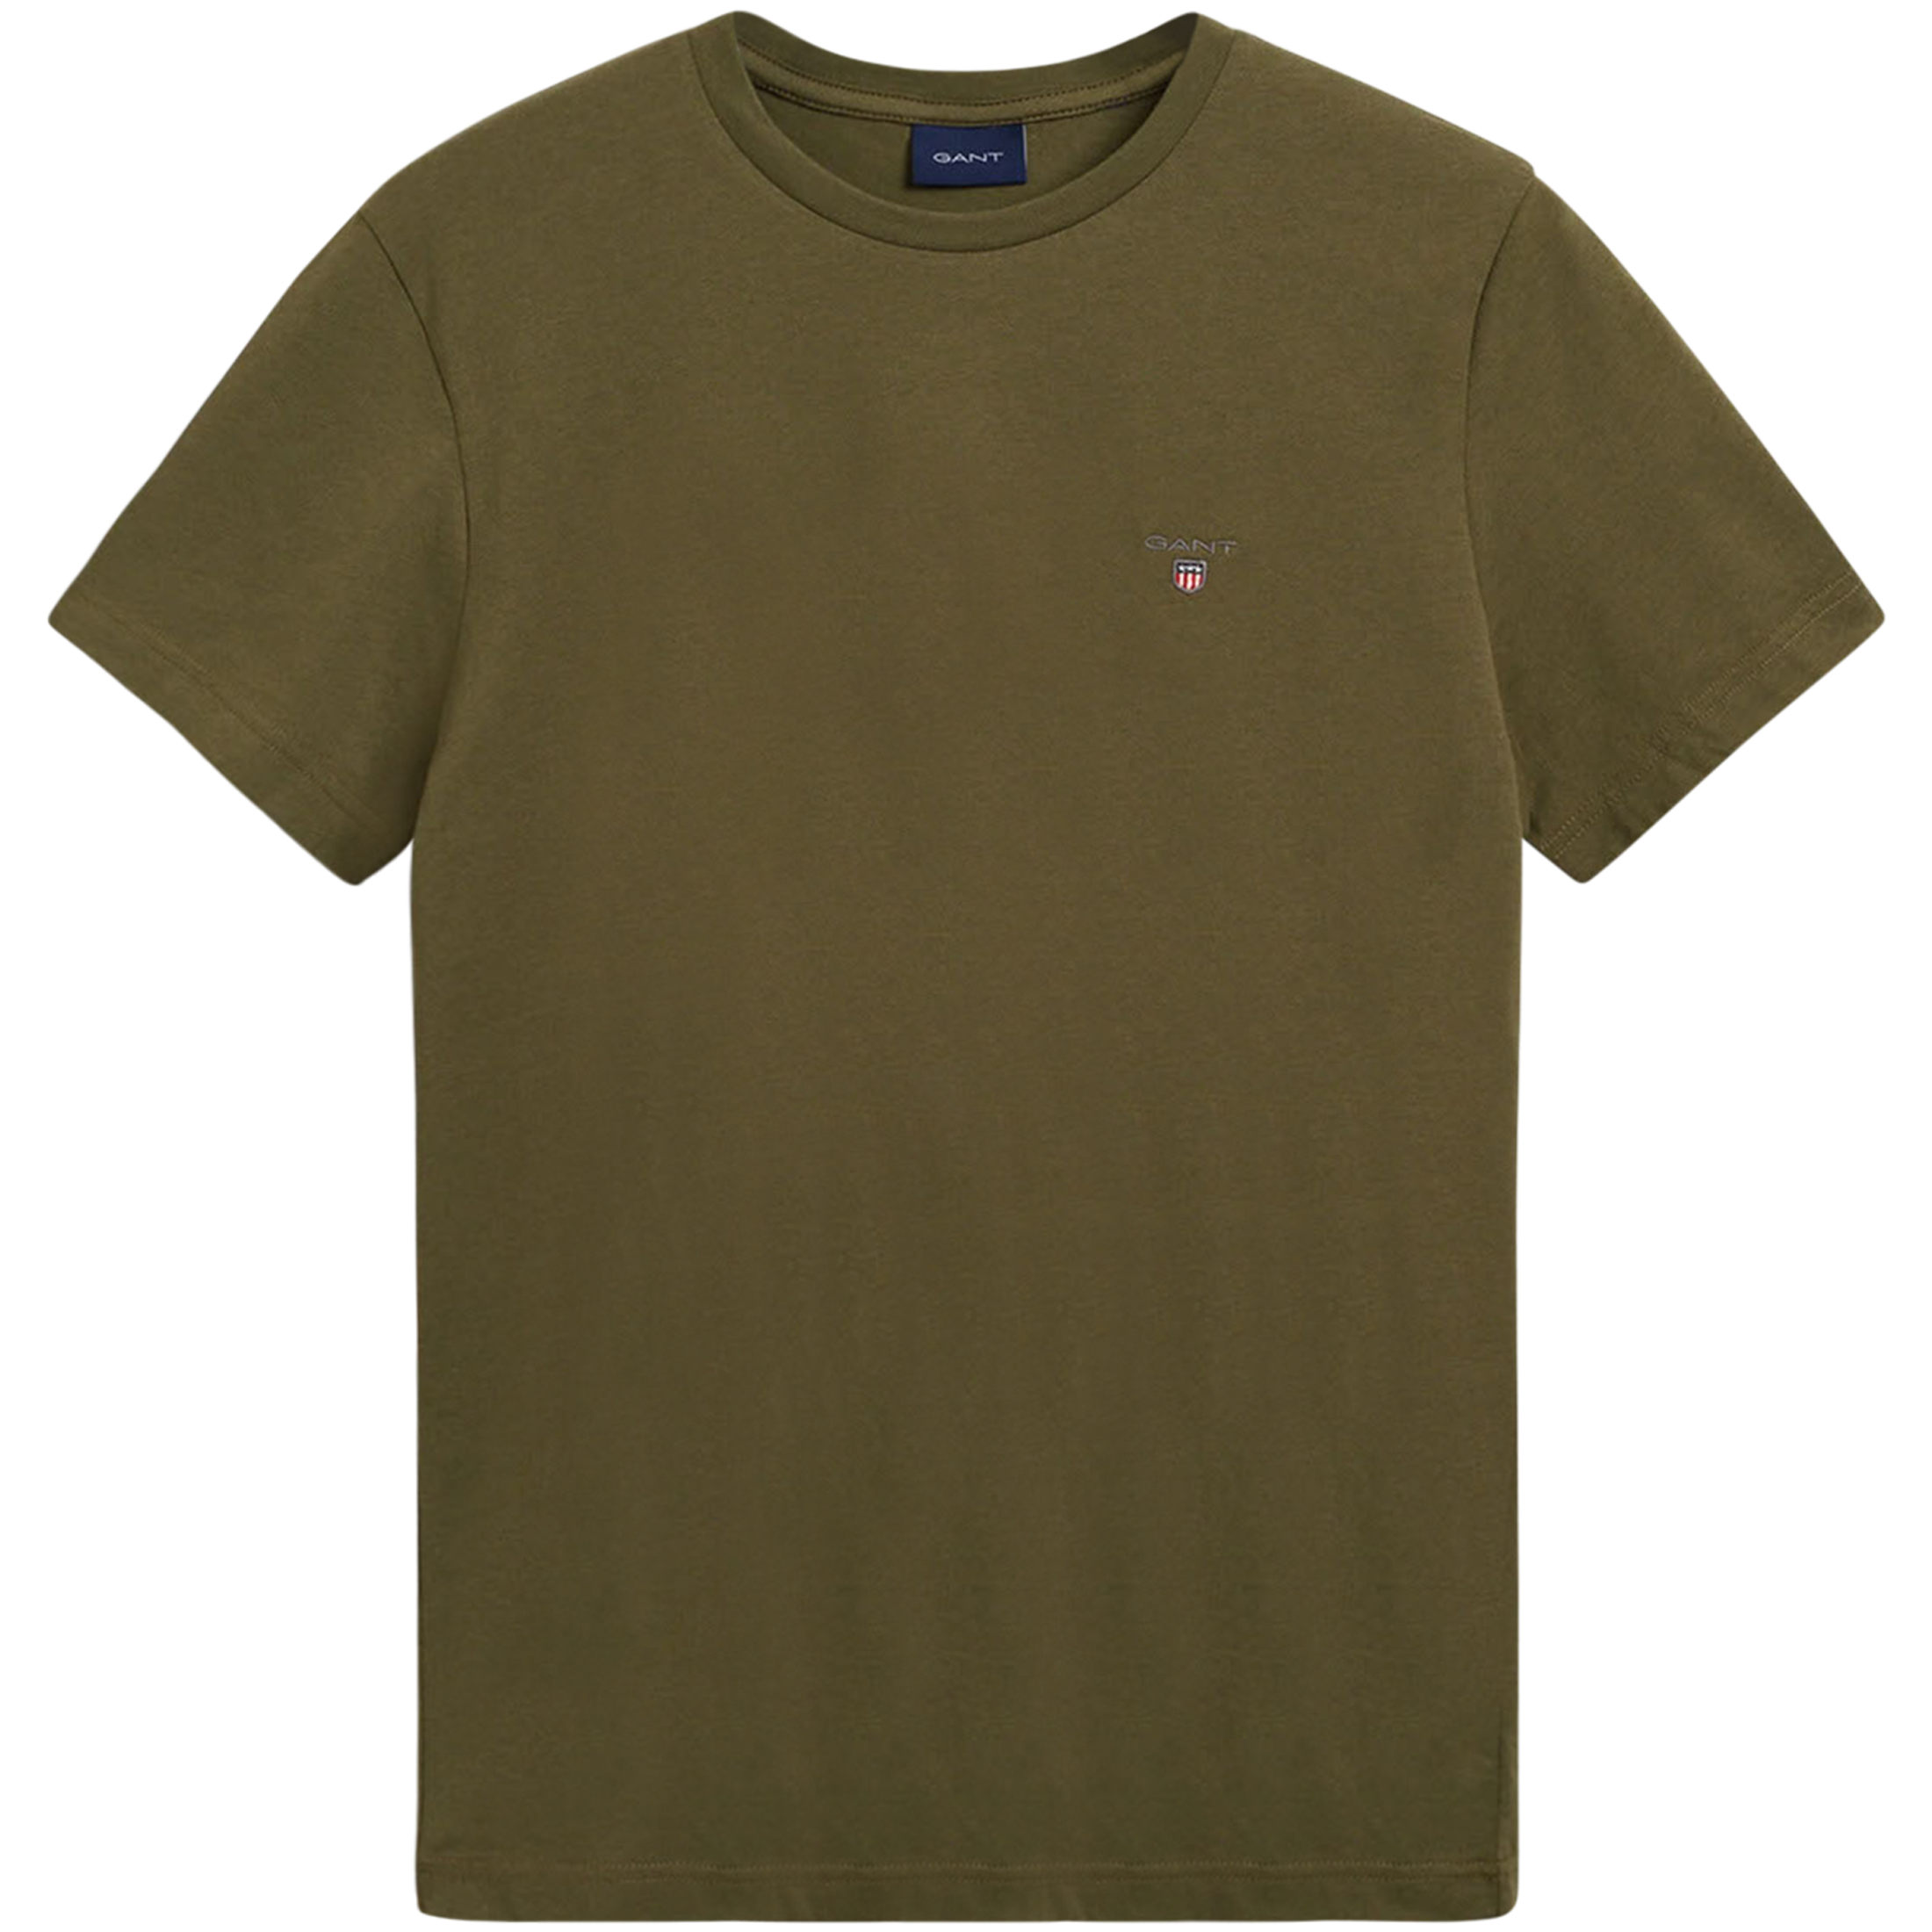 Original SS T-Shirt - Racing Green